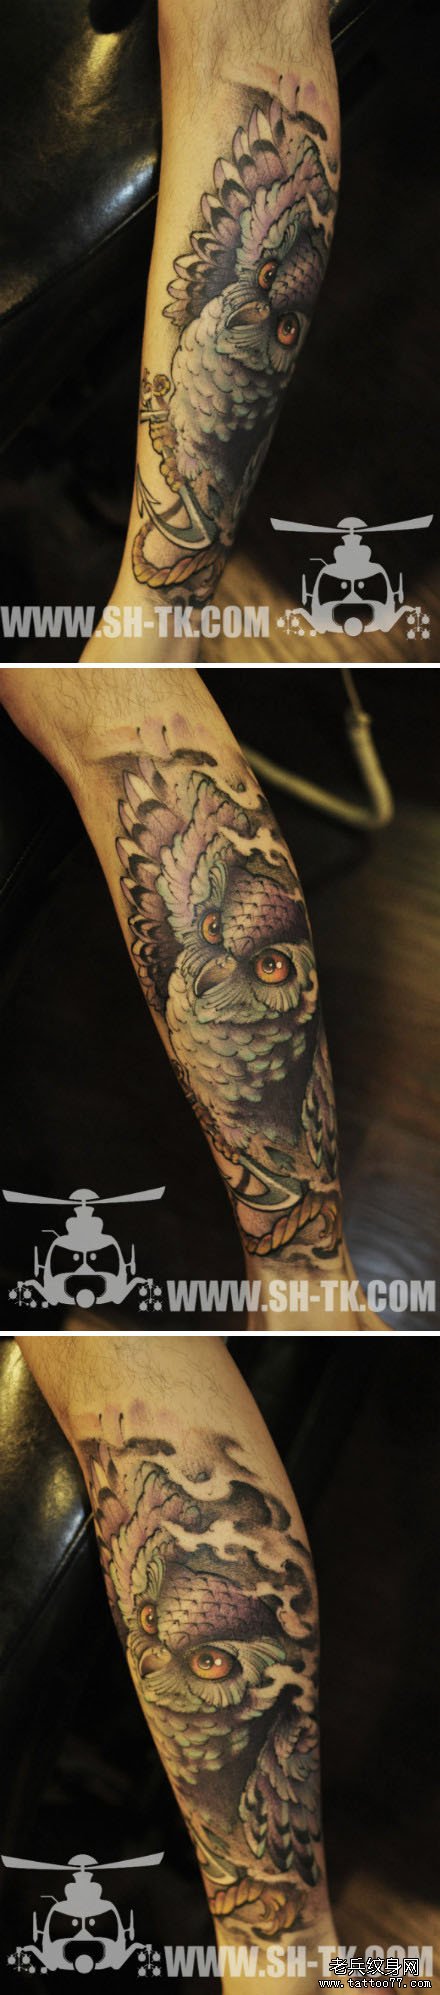 腿部经典很帅的猫头鹰纹身图案